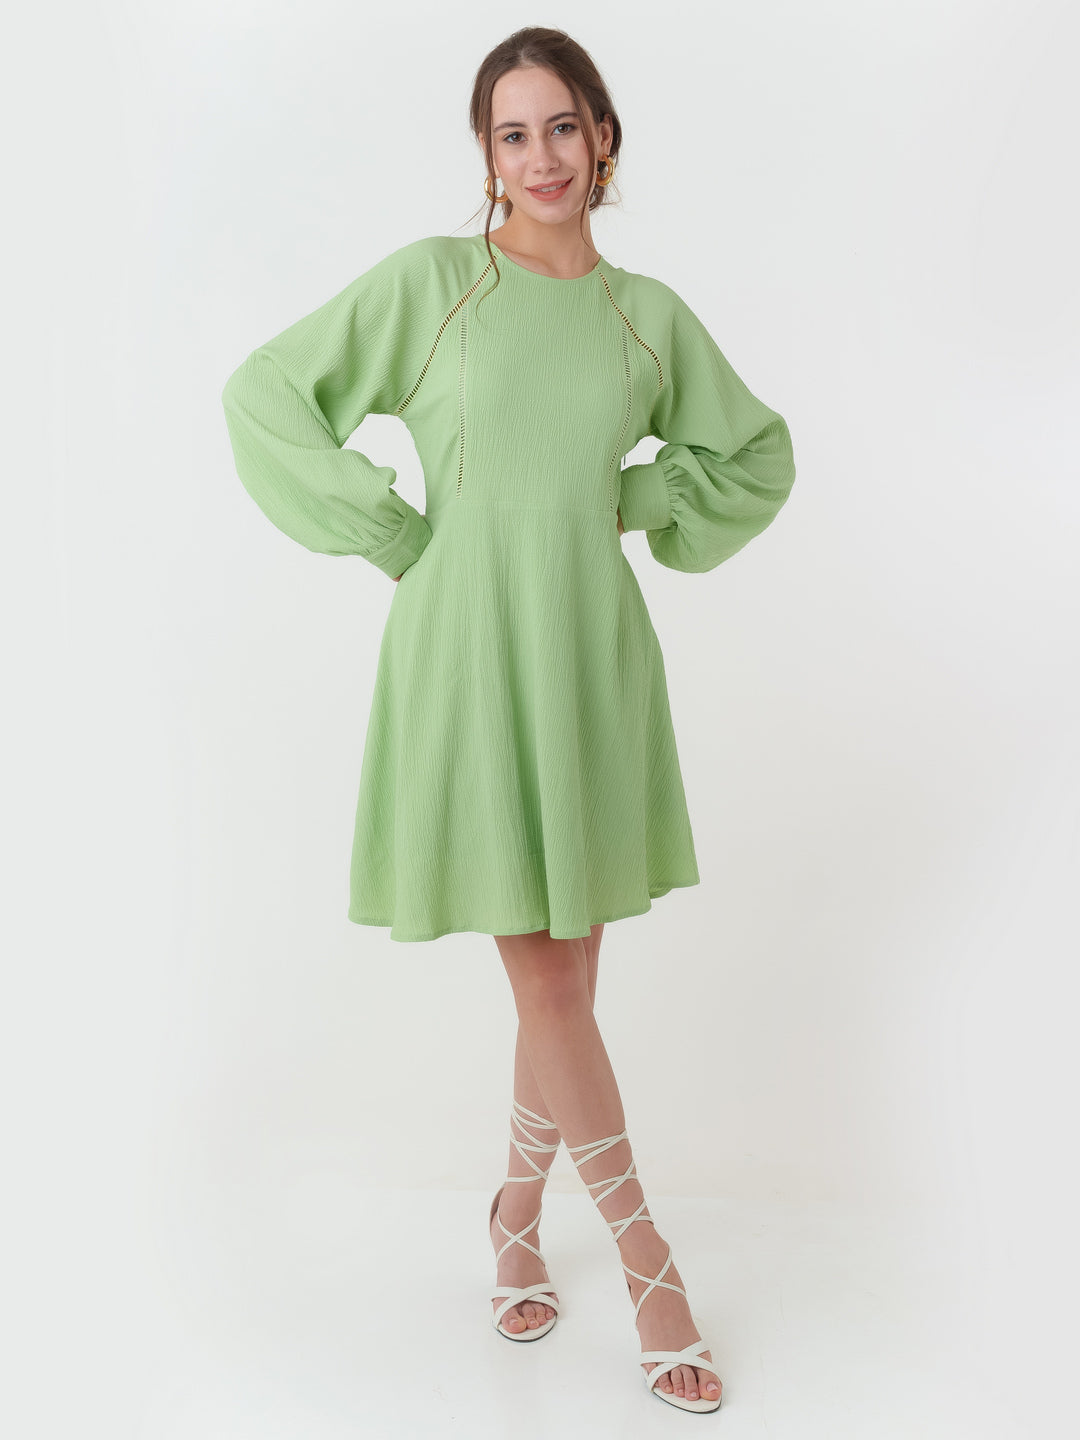 Green_Textured_Regular_Short_Dress_1